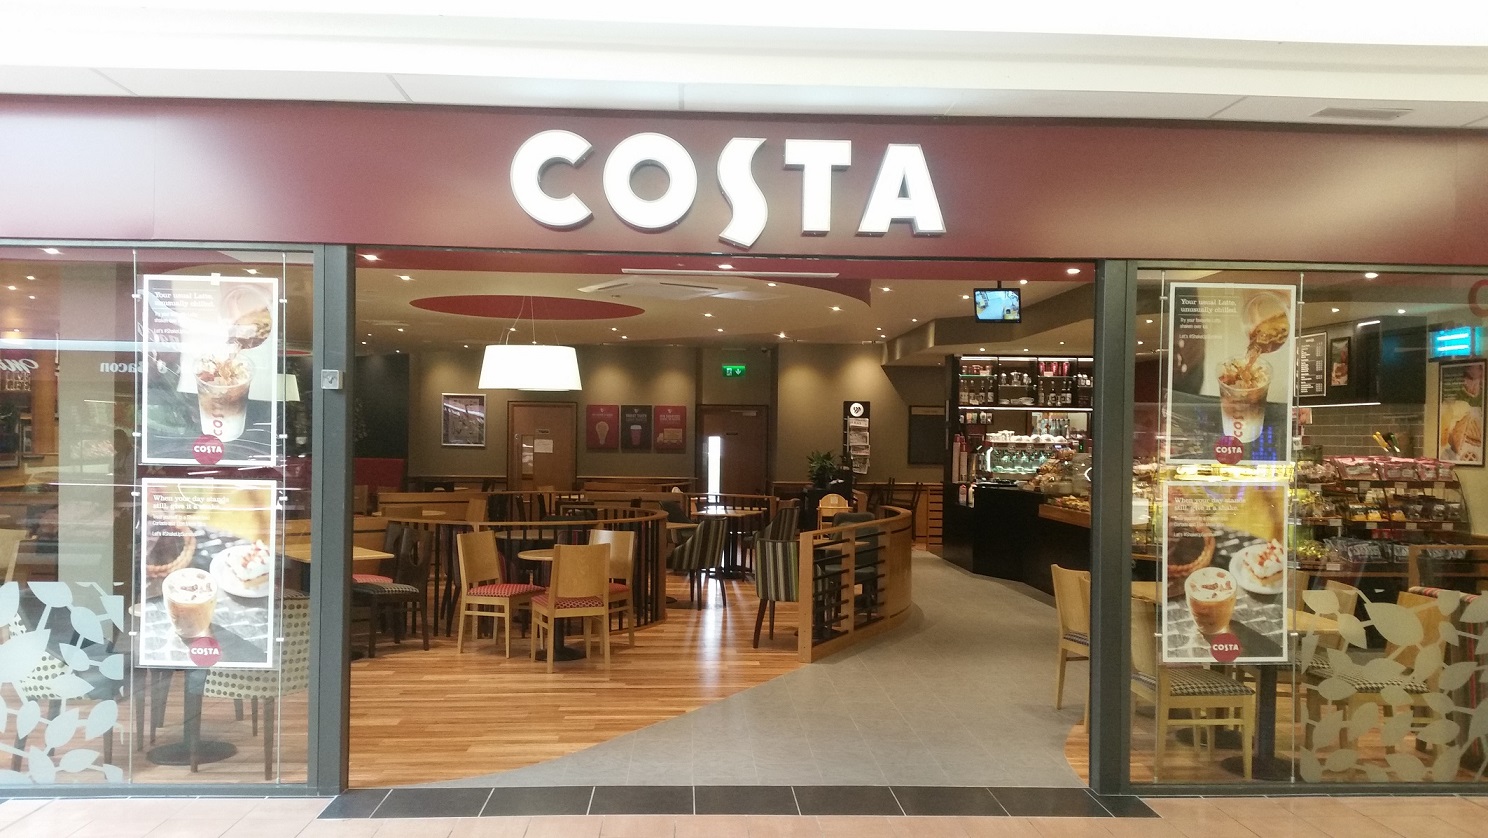 Costa Coffee, Lisduggan completed